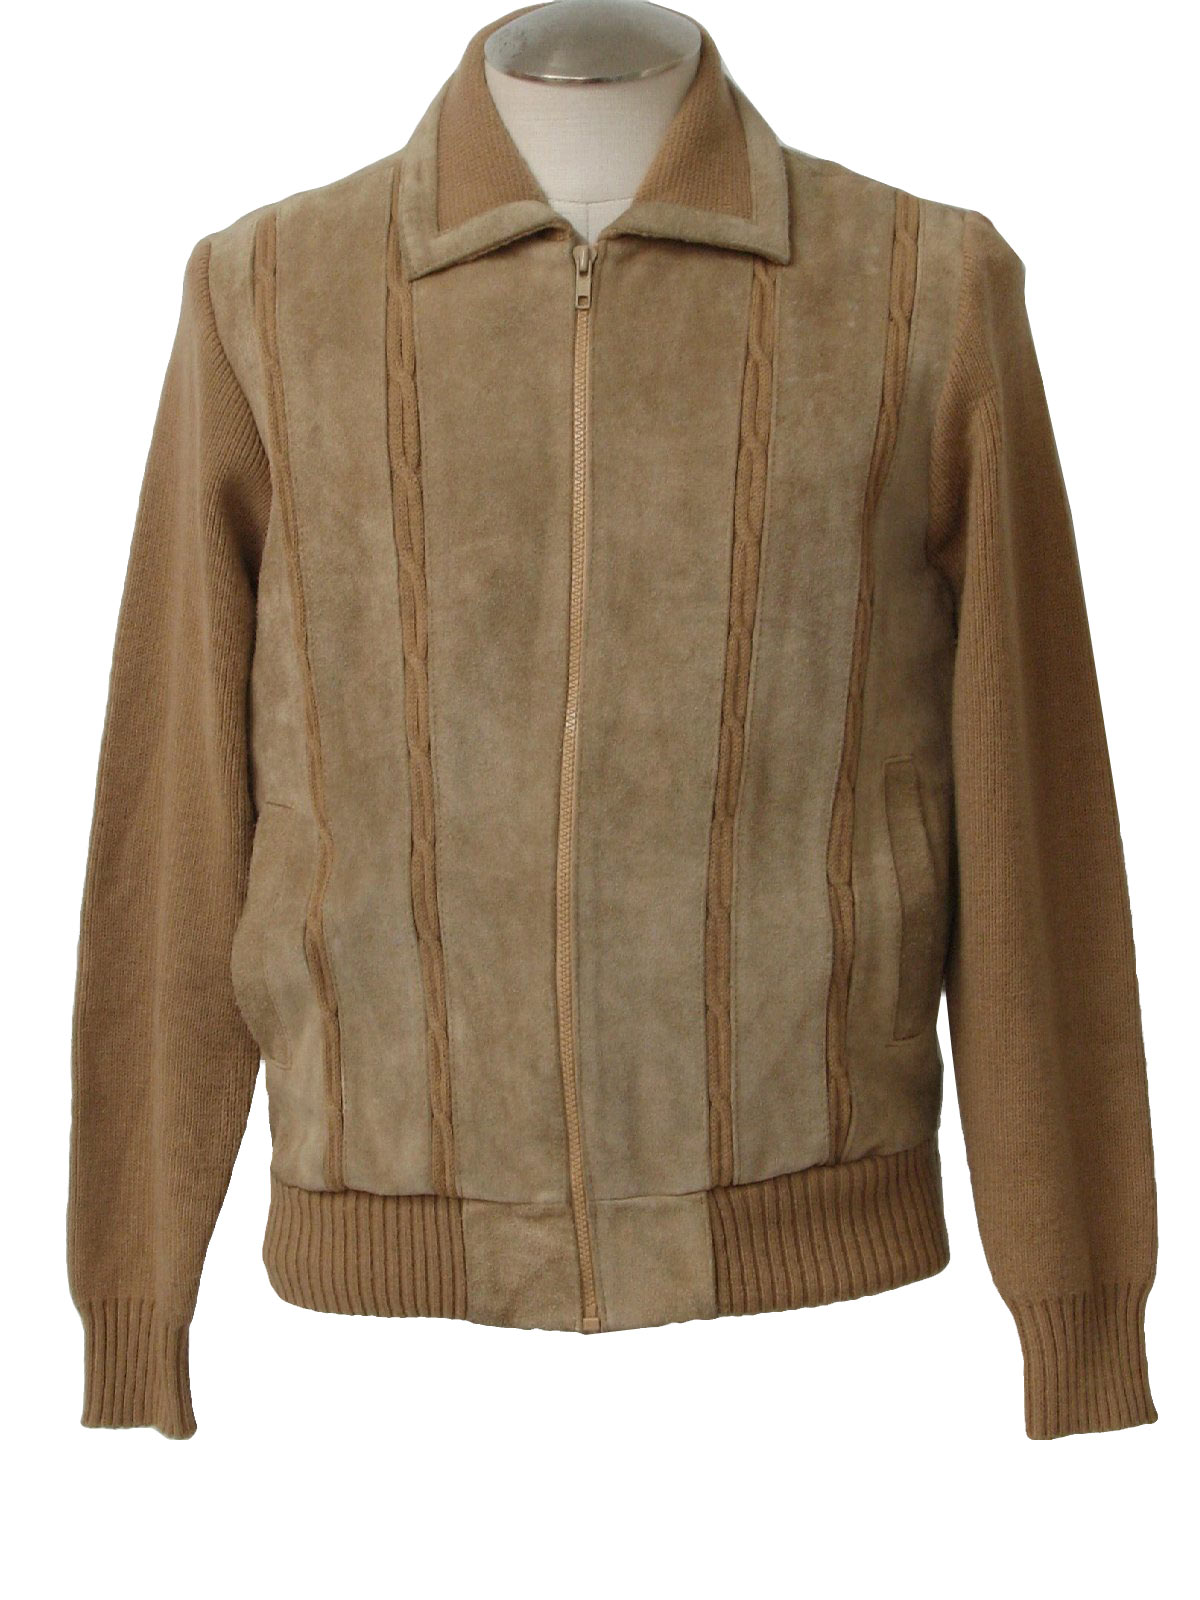 Mervyns 80's Vintage Leather Jacket: Early 80s -Mervyns- Mens tan suede ...